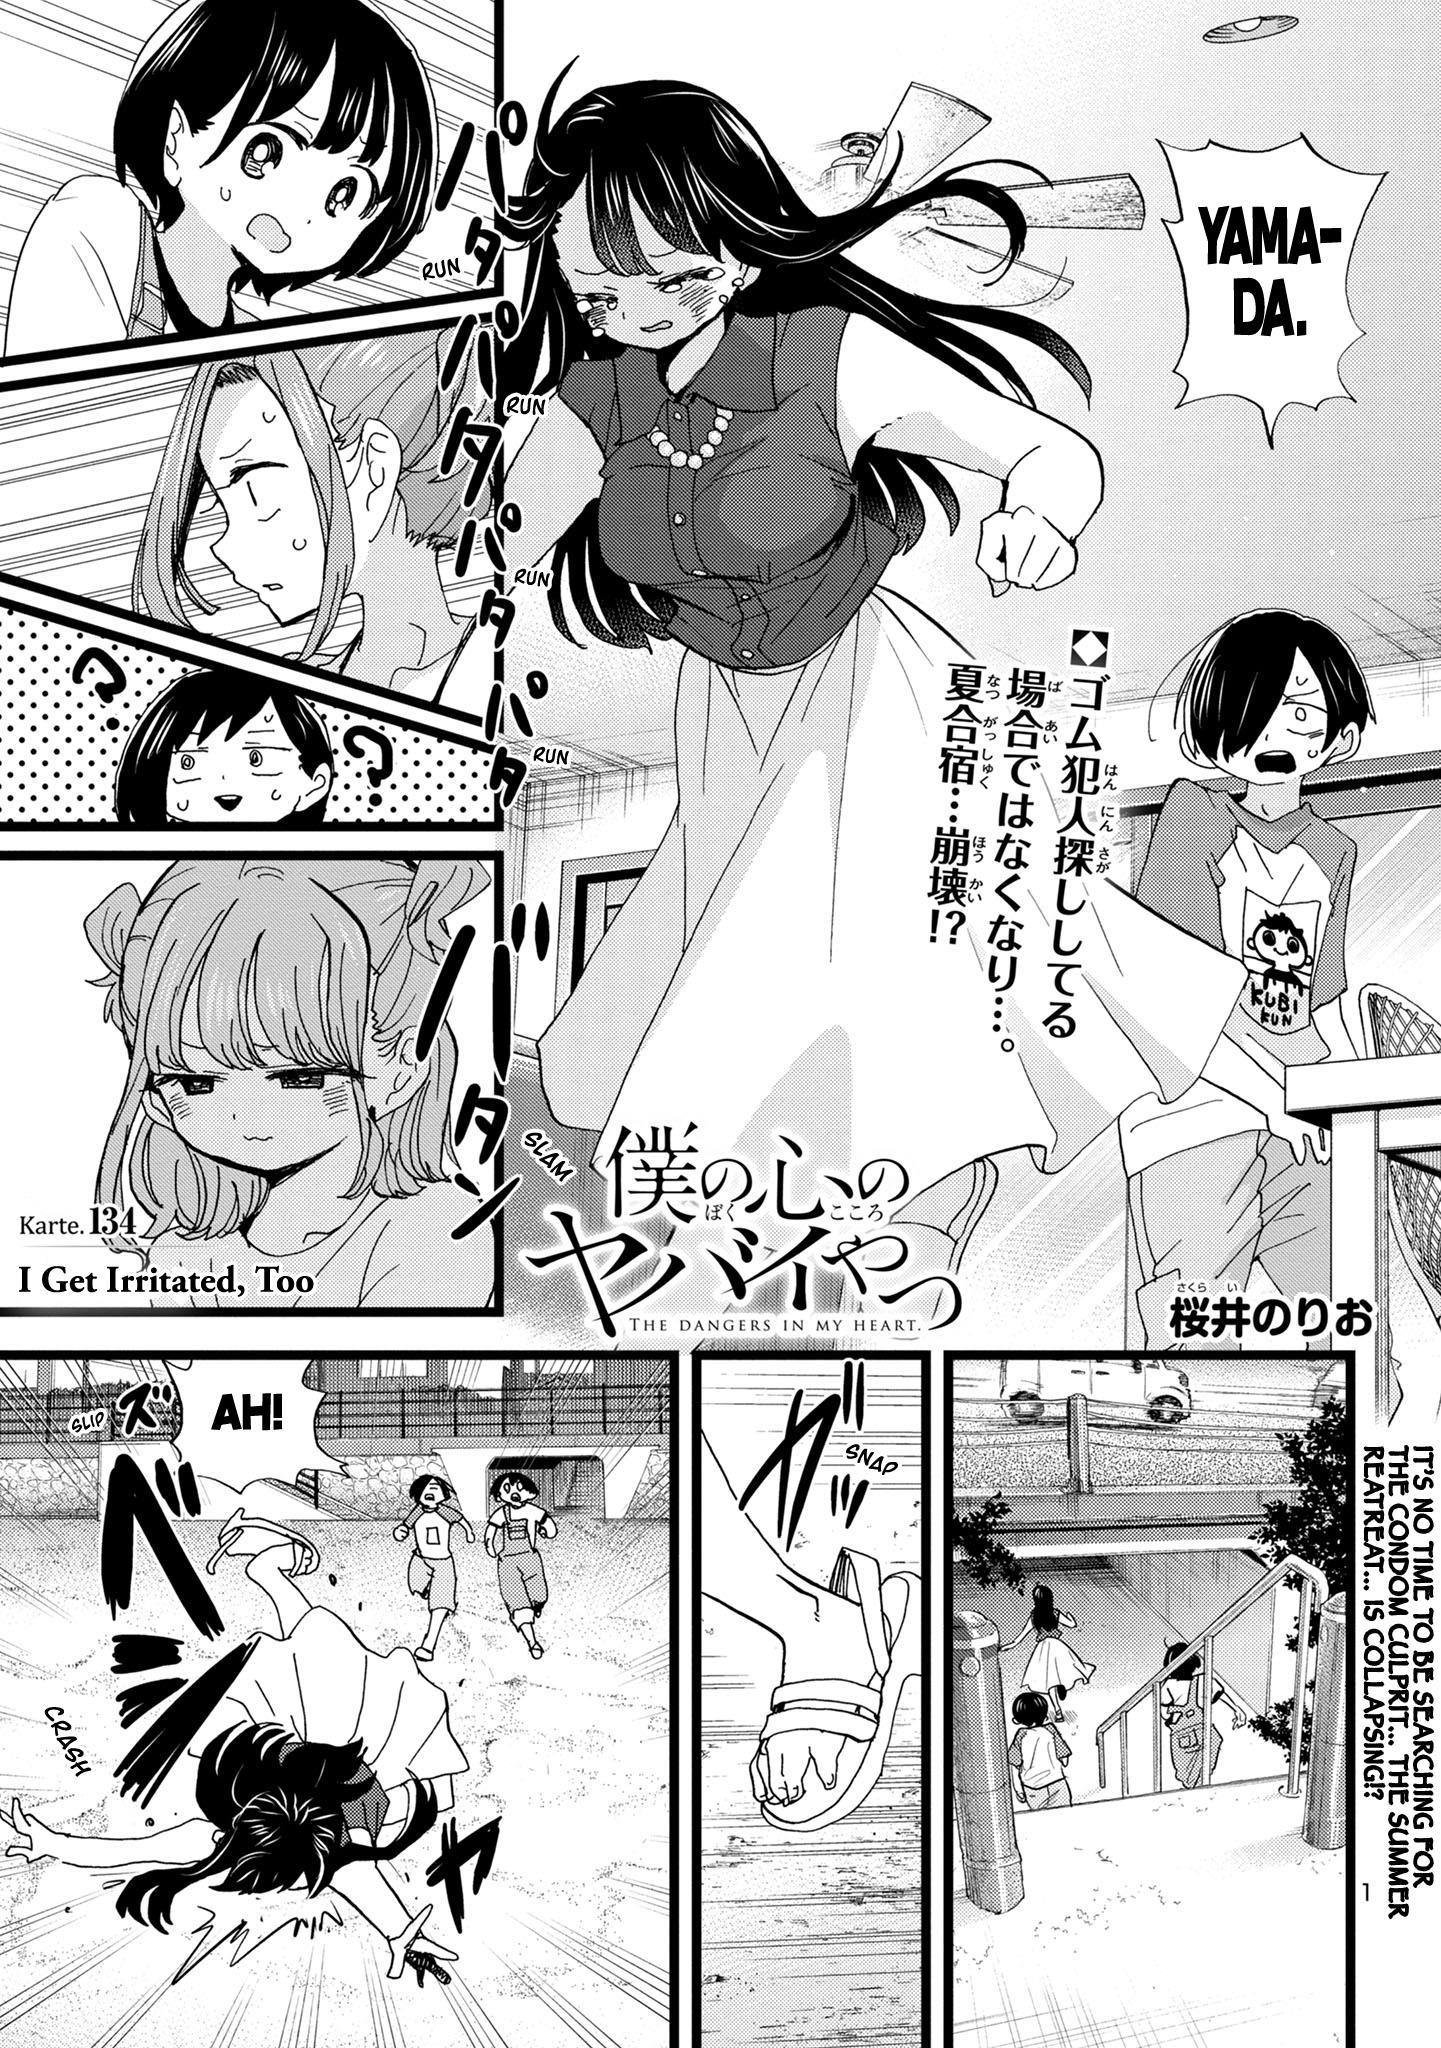 Boku no Kokoro no Yabai Yatsu Vol.8 Ch.111.1 Page 1 - Mangago